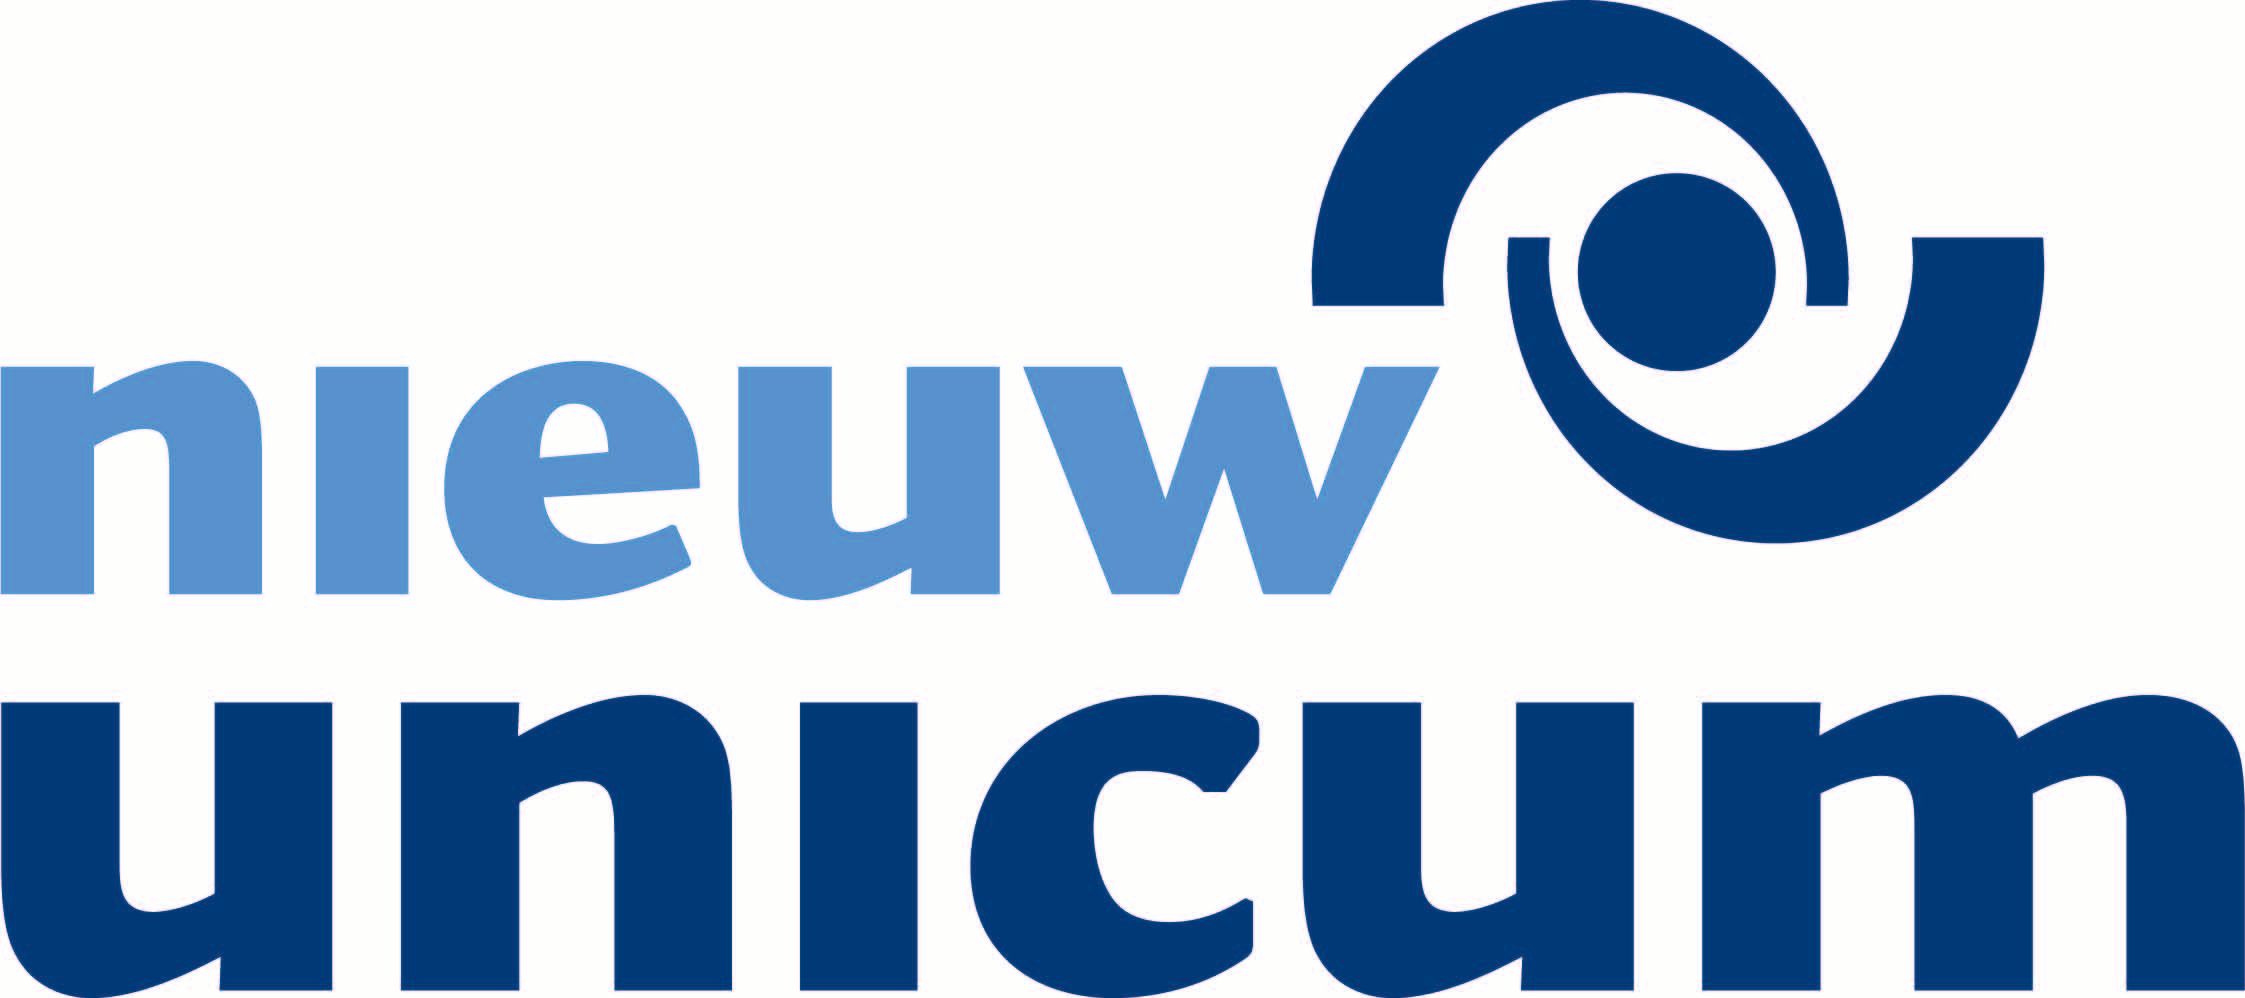 Nieuw Unicum logo